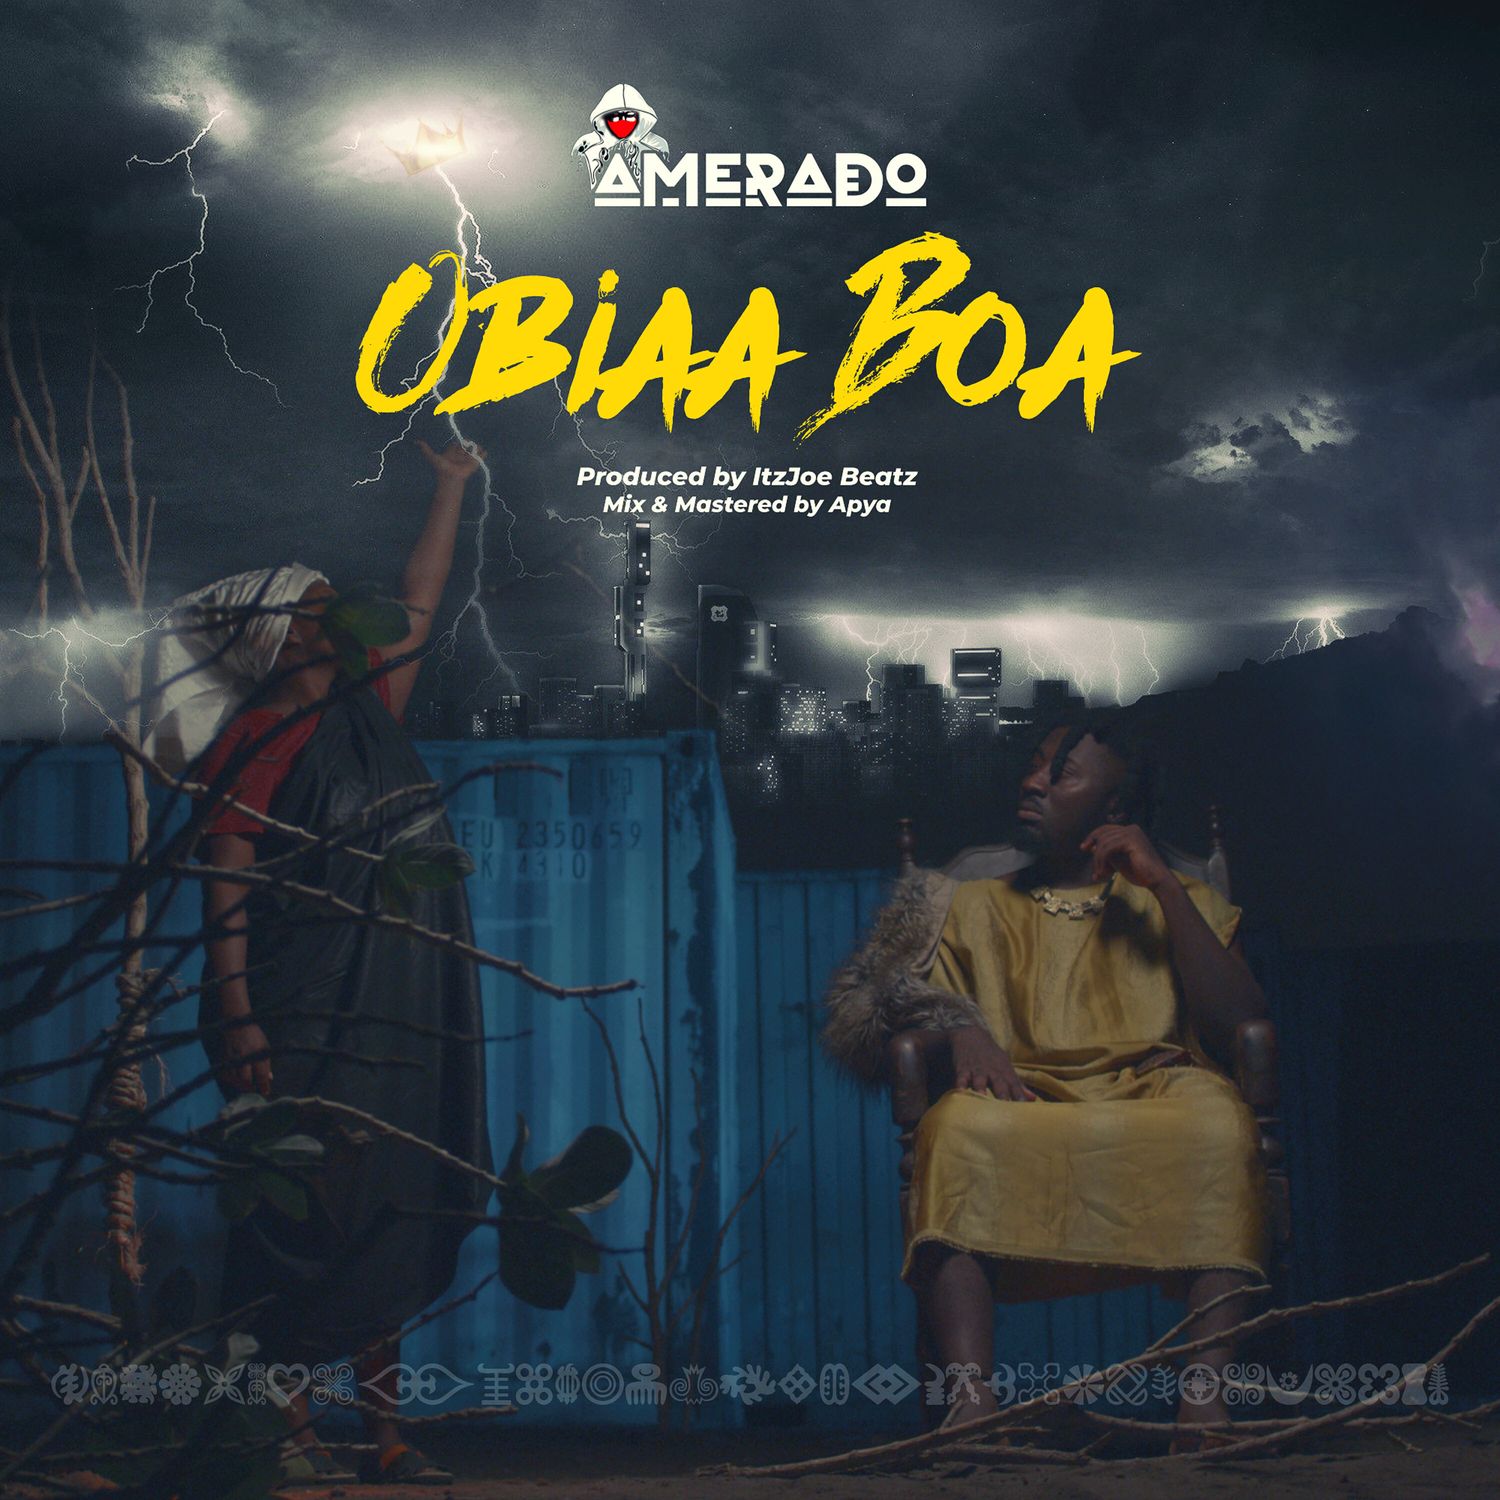 Amerado finally releases Obiaa Boa